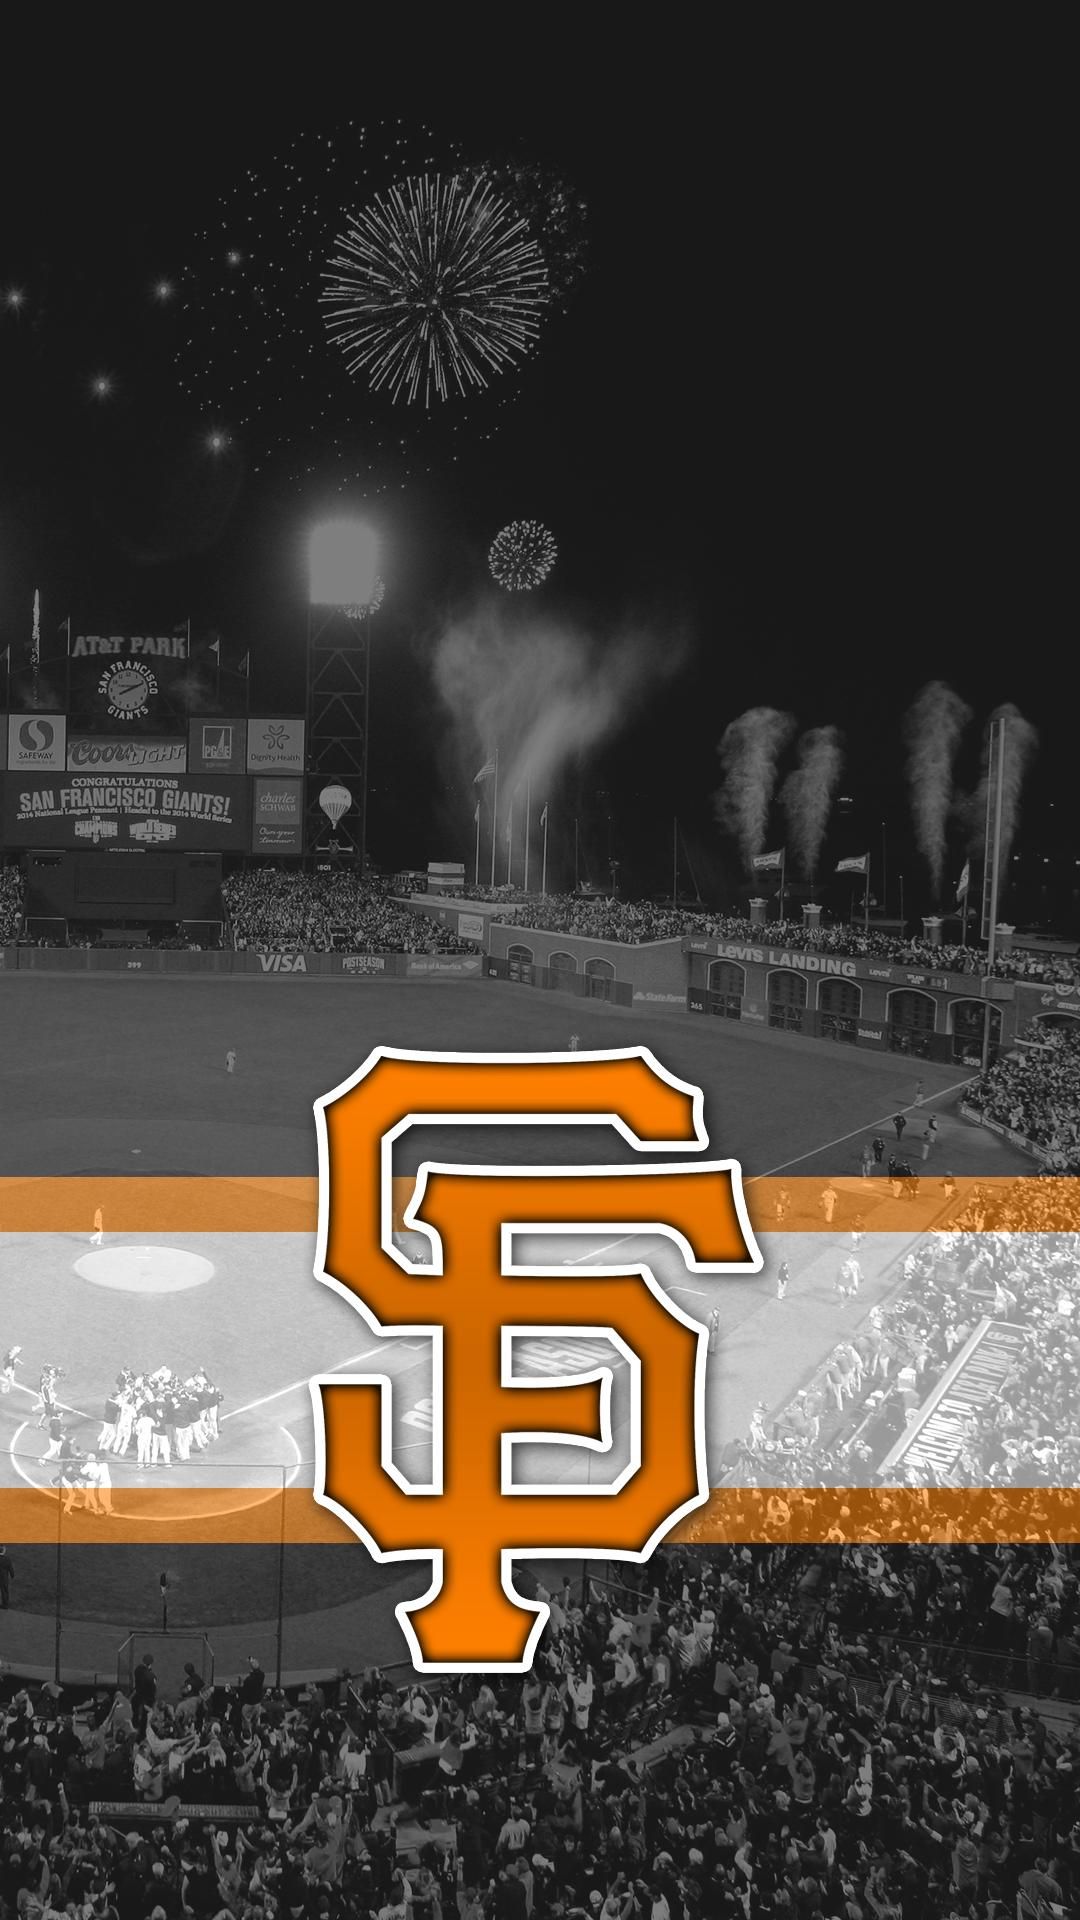 iPhone wallpaper ideas. sf giants, giants baseball, san francisco giants